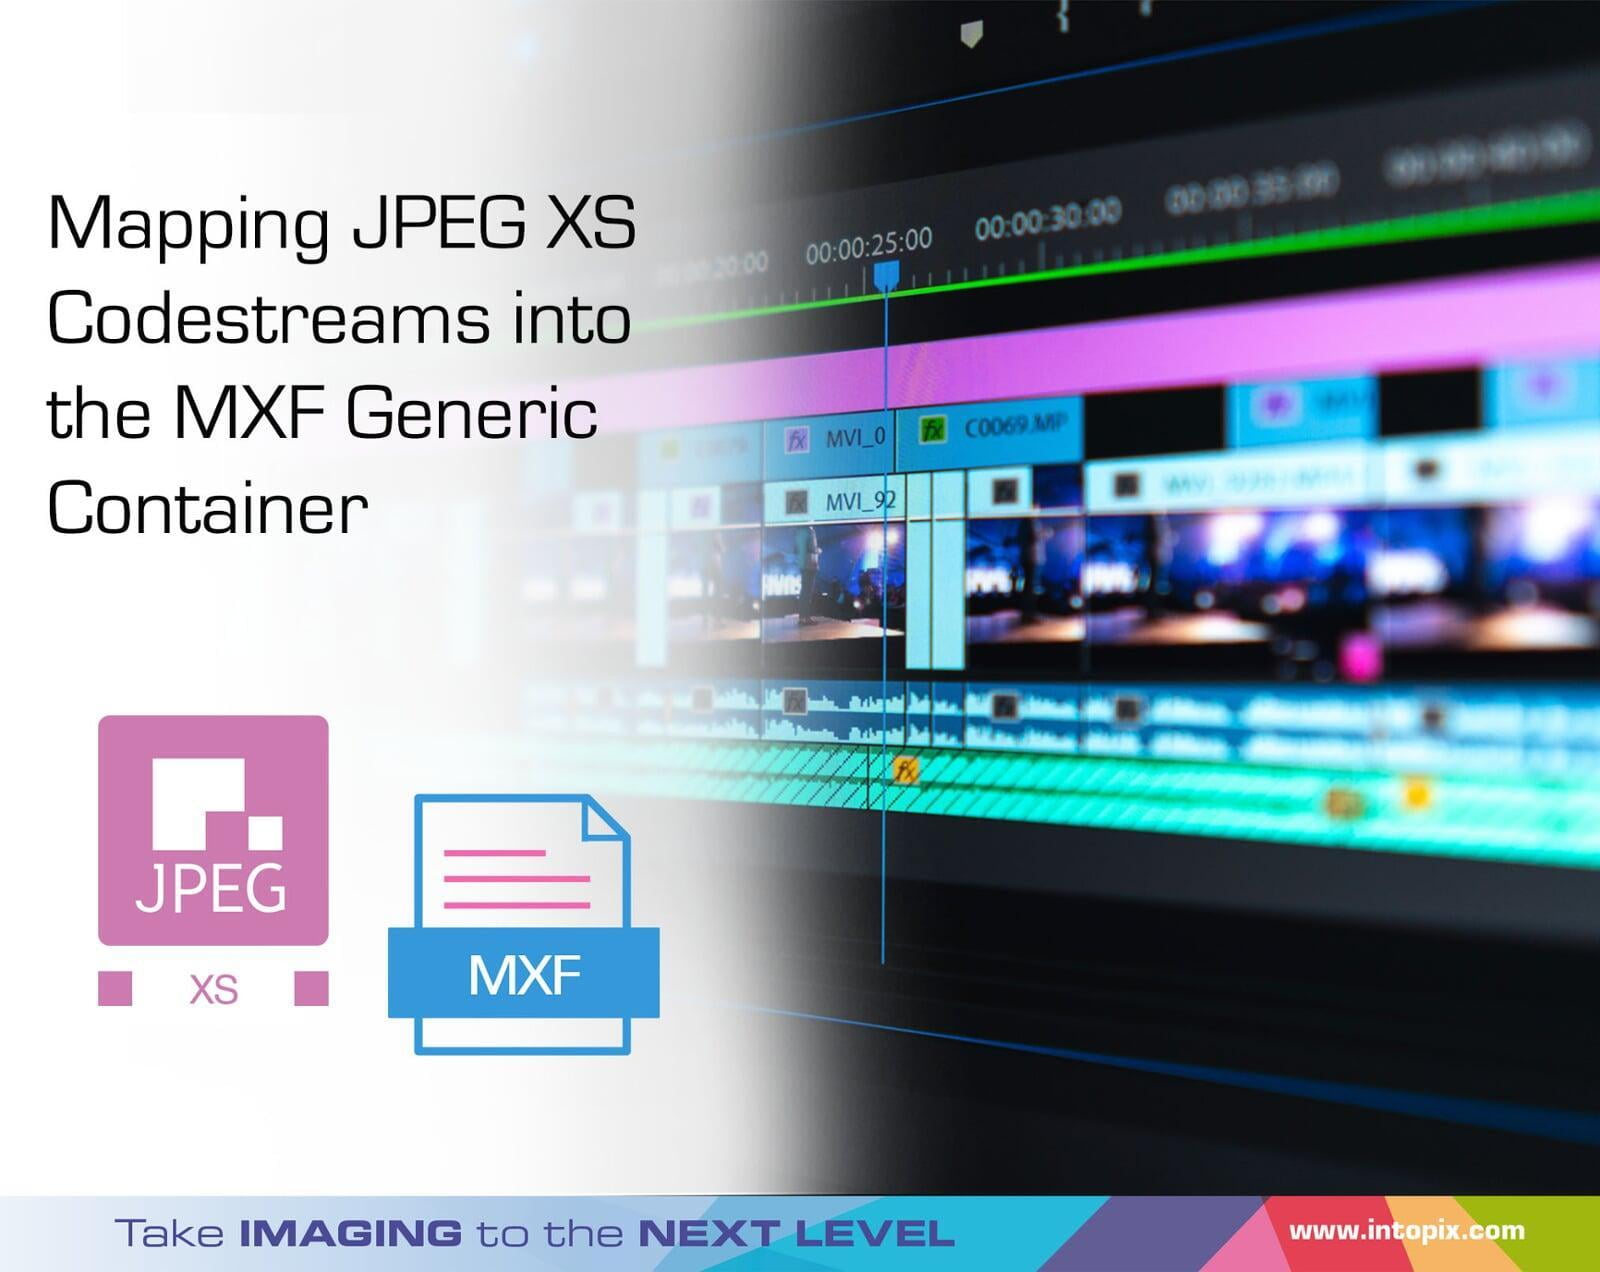 映射 JPEG XS代碼流到MXF通用容器中